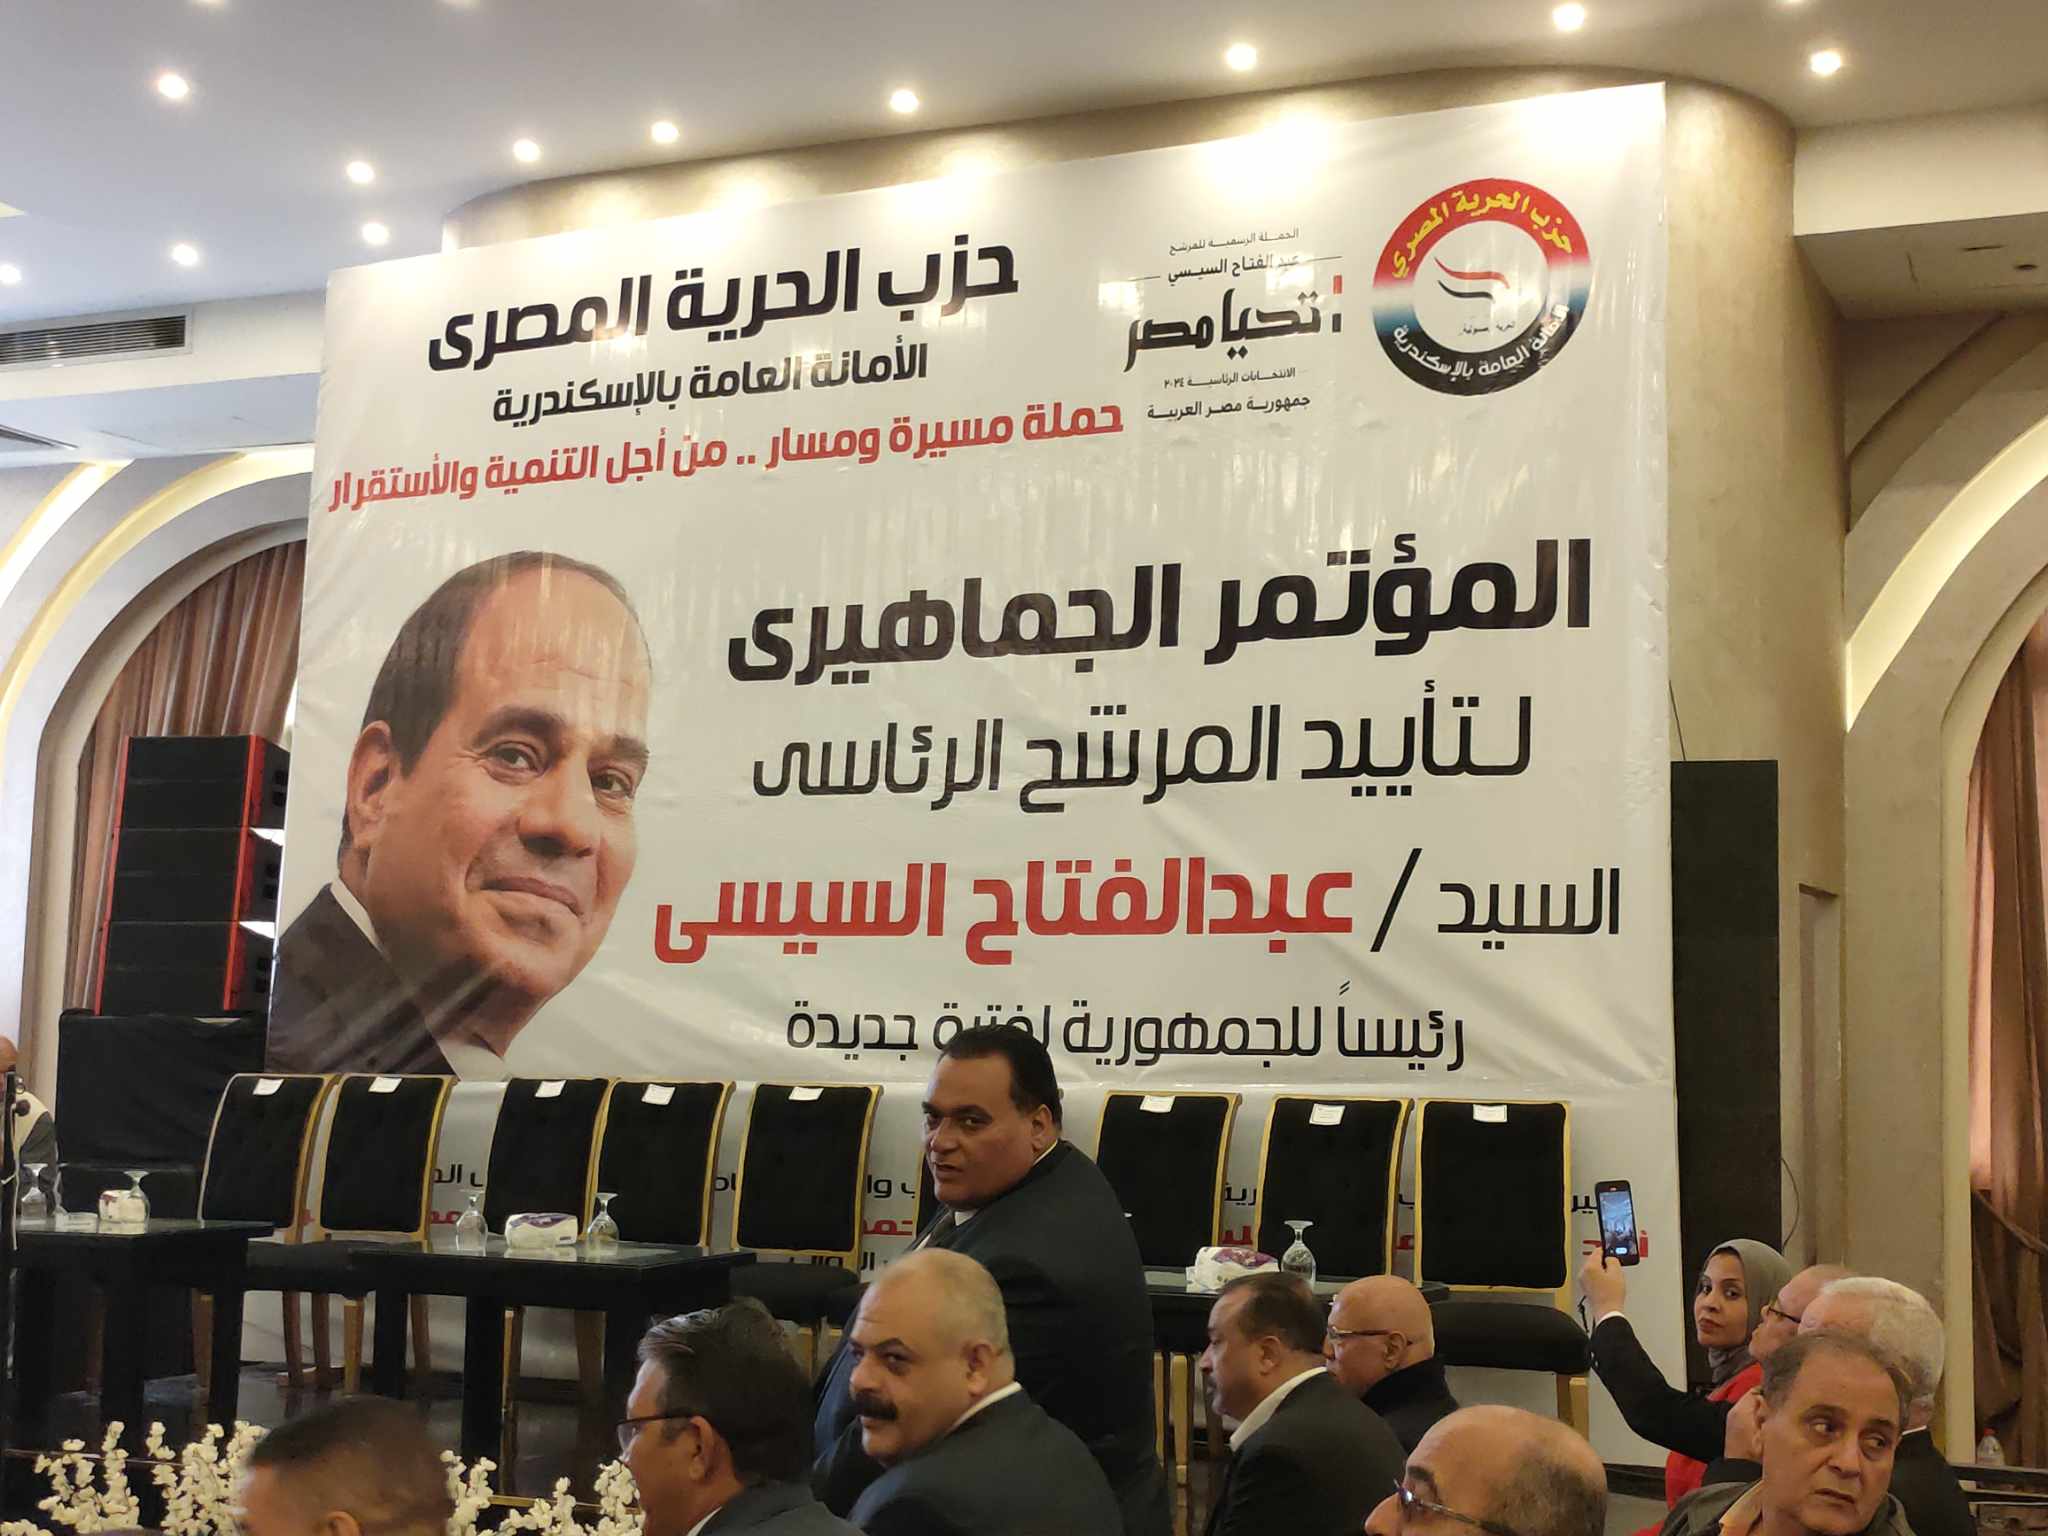 بدء توافد علي مؤتمر دعم المرشح الرئاسي عبد الفتاح السيسي بحزب الحرية المصري